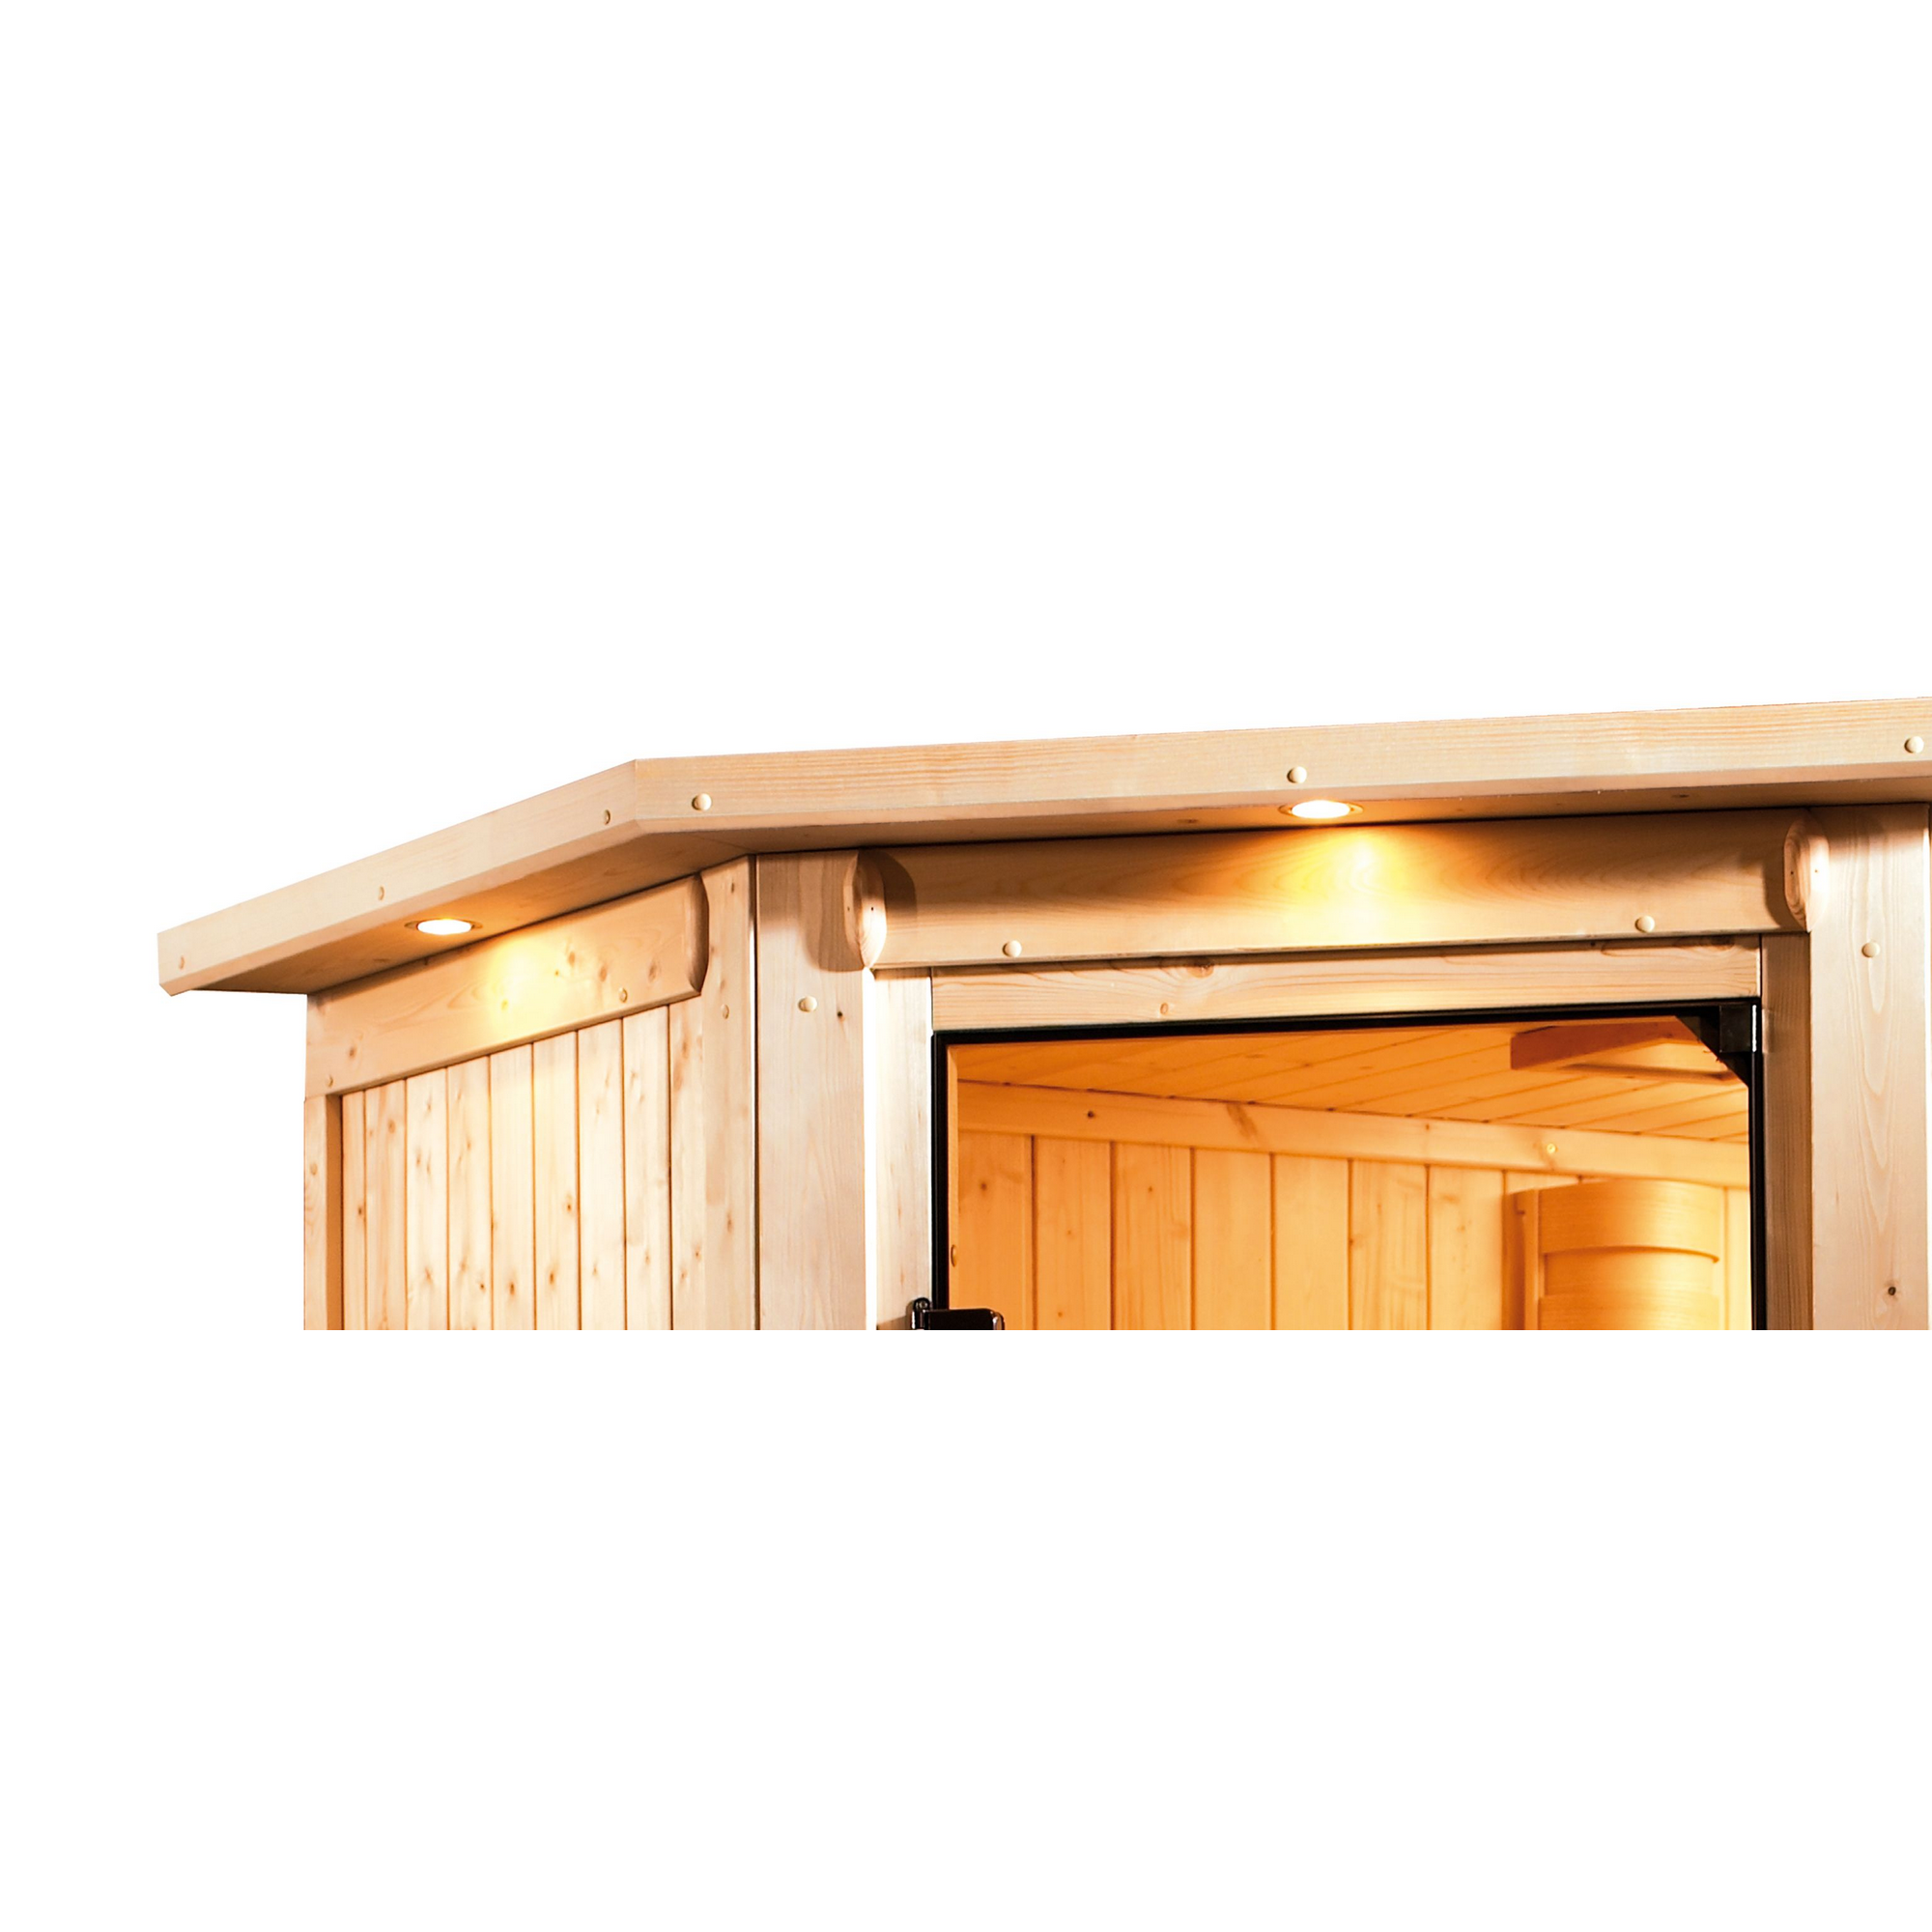 Infrarotkabine 'Alejandra' naturbelassen mit Kranz und bronzierter Tür 9 kW Bio-Ofen externe Steuerung 245 x 210 x 202 cm + product picture